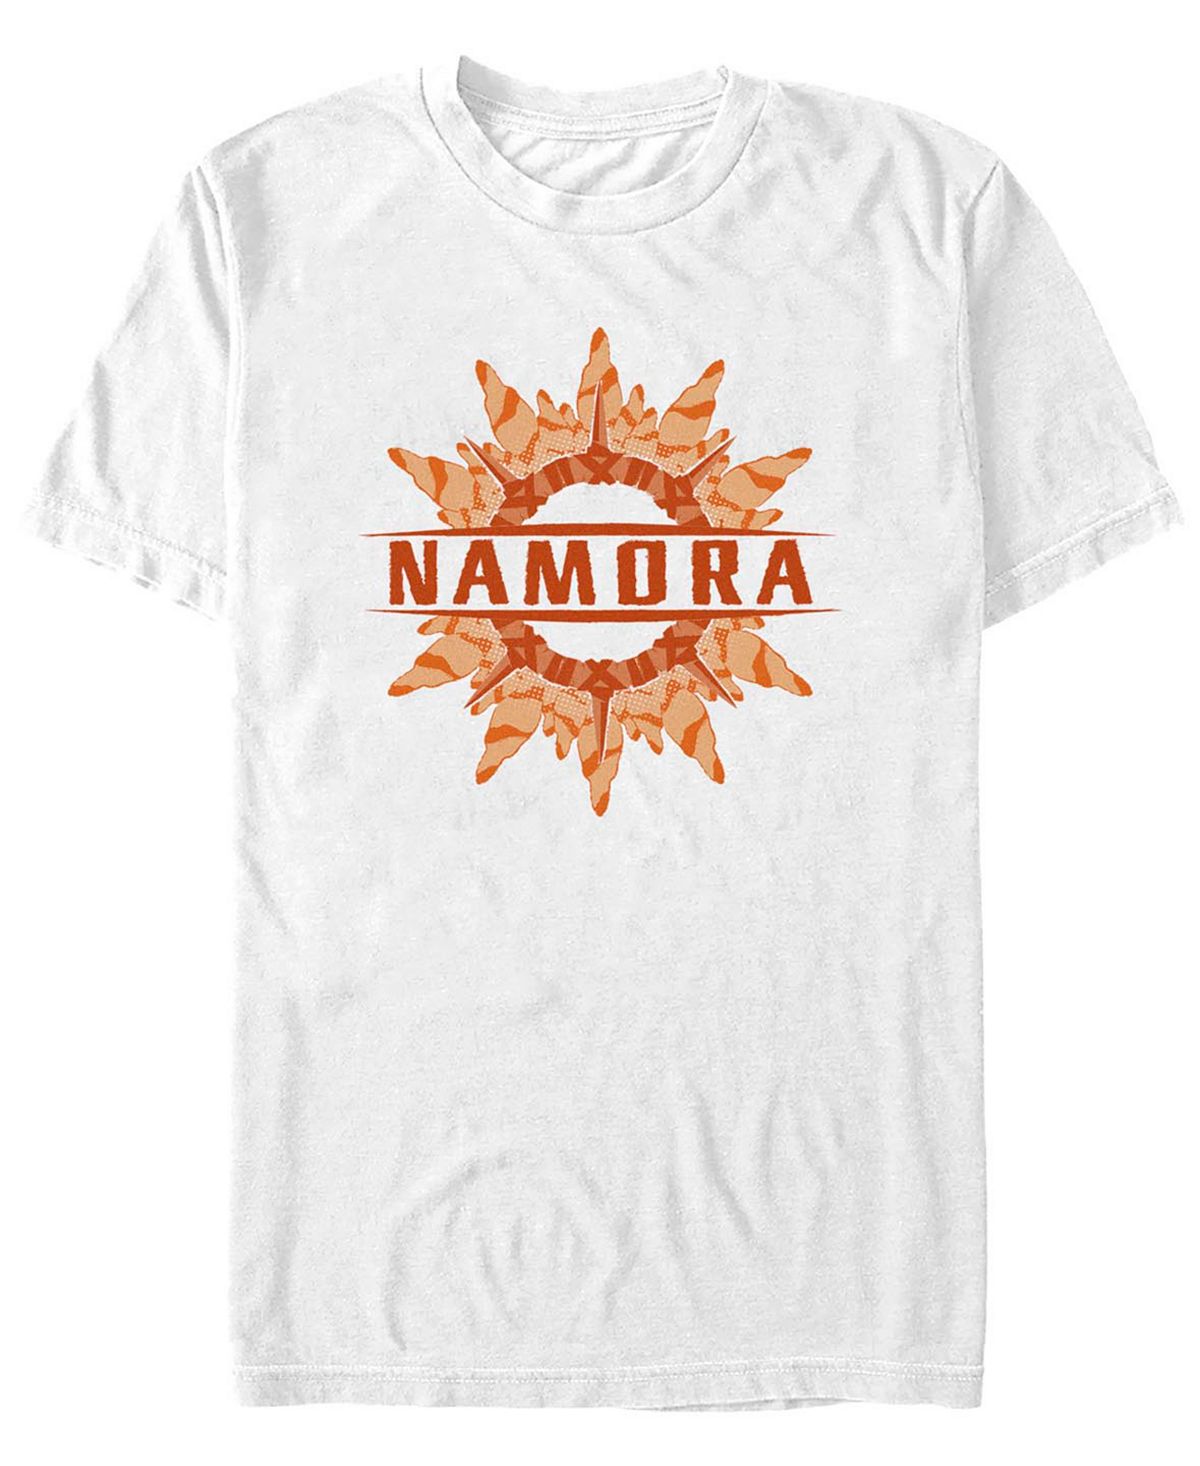 Мужская футболка с коротким рукавом namora coral ring Fifth Sun, белый подарочный комплект комиксов шедевры marvel